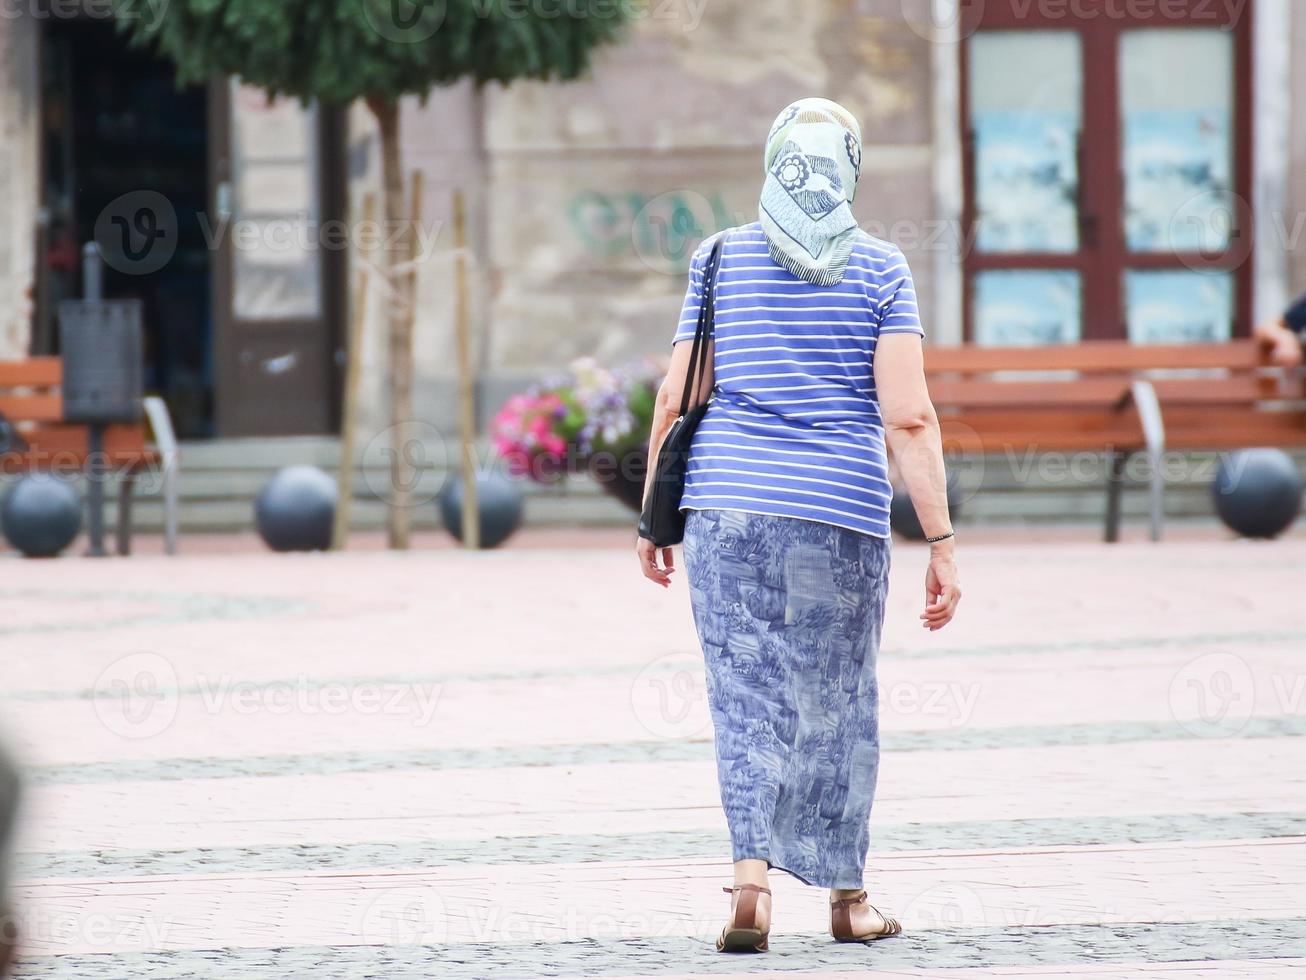 femme marchant dans la rue par une journée ensoleillée photo